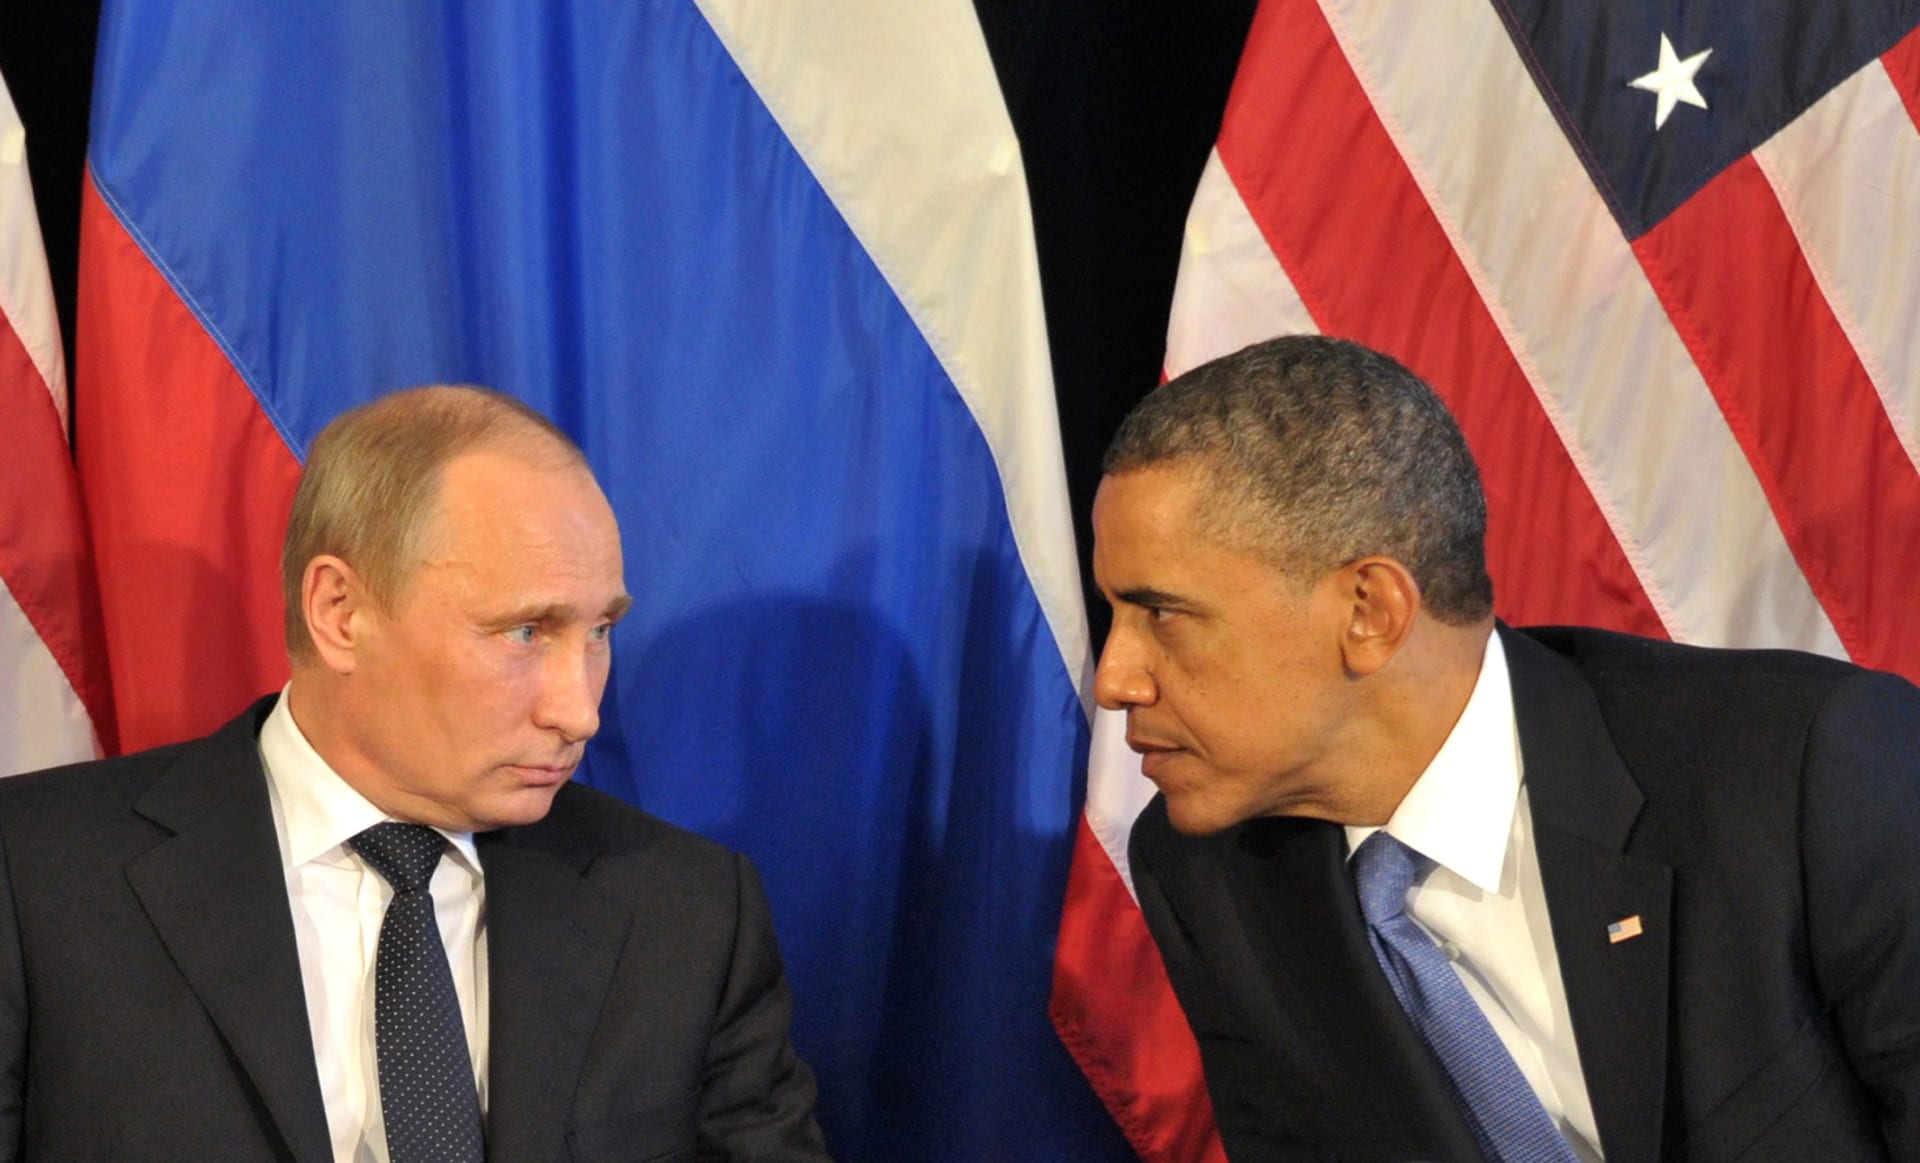 قائد القيادة المركزية الأمريكية عن "اتفاق وقف الأعمال العدائية في سوريا": هناك "شح في الثقة" بين روسيا وأمريكا